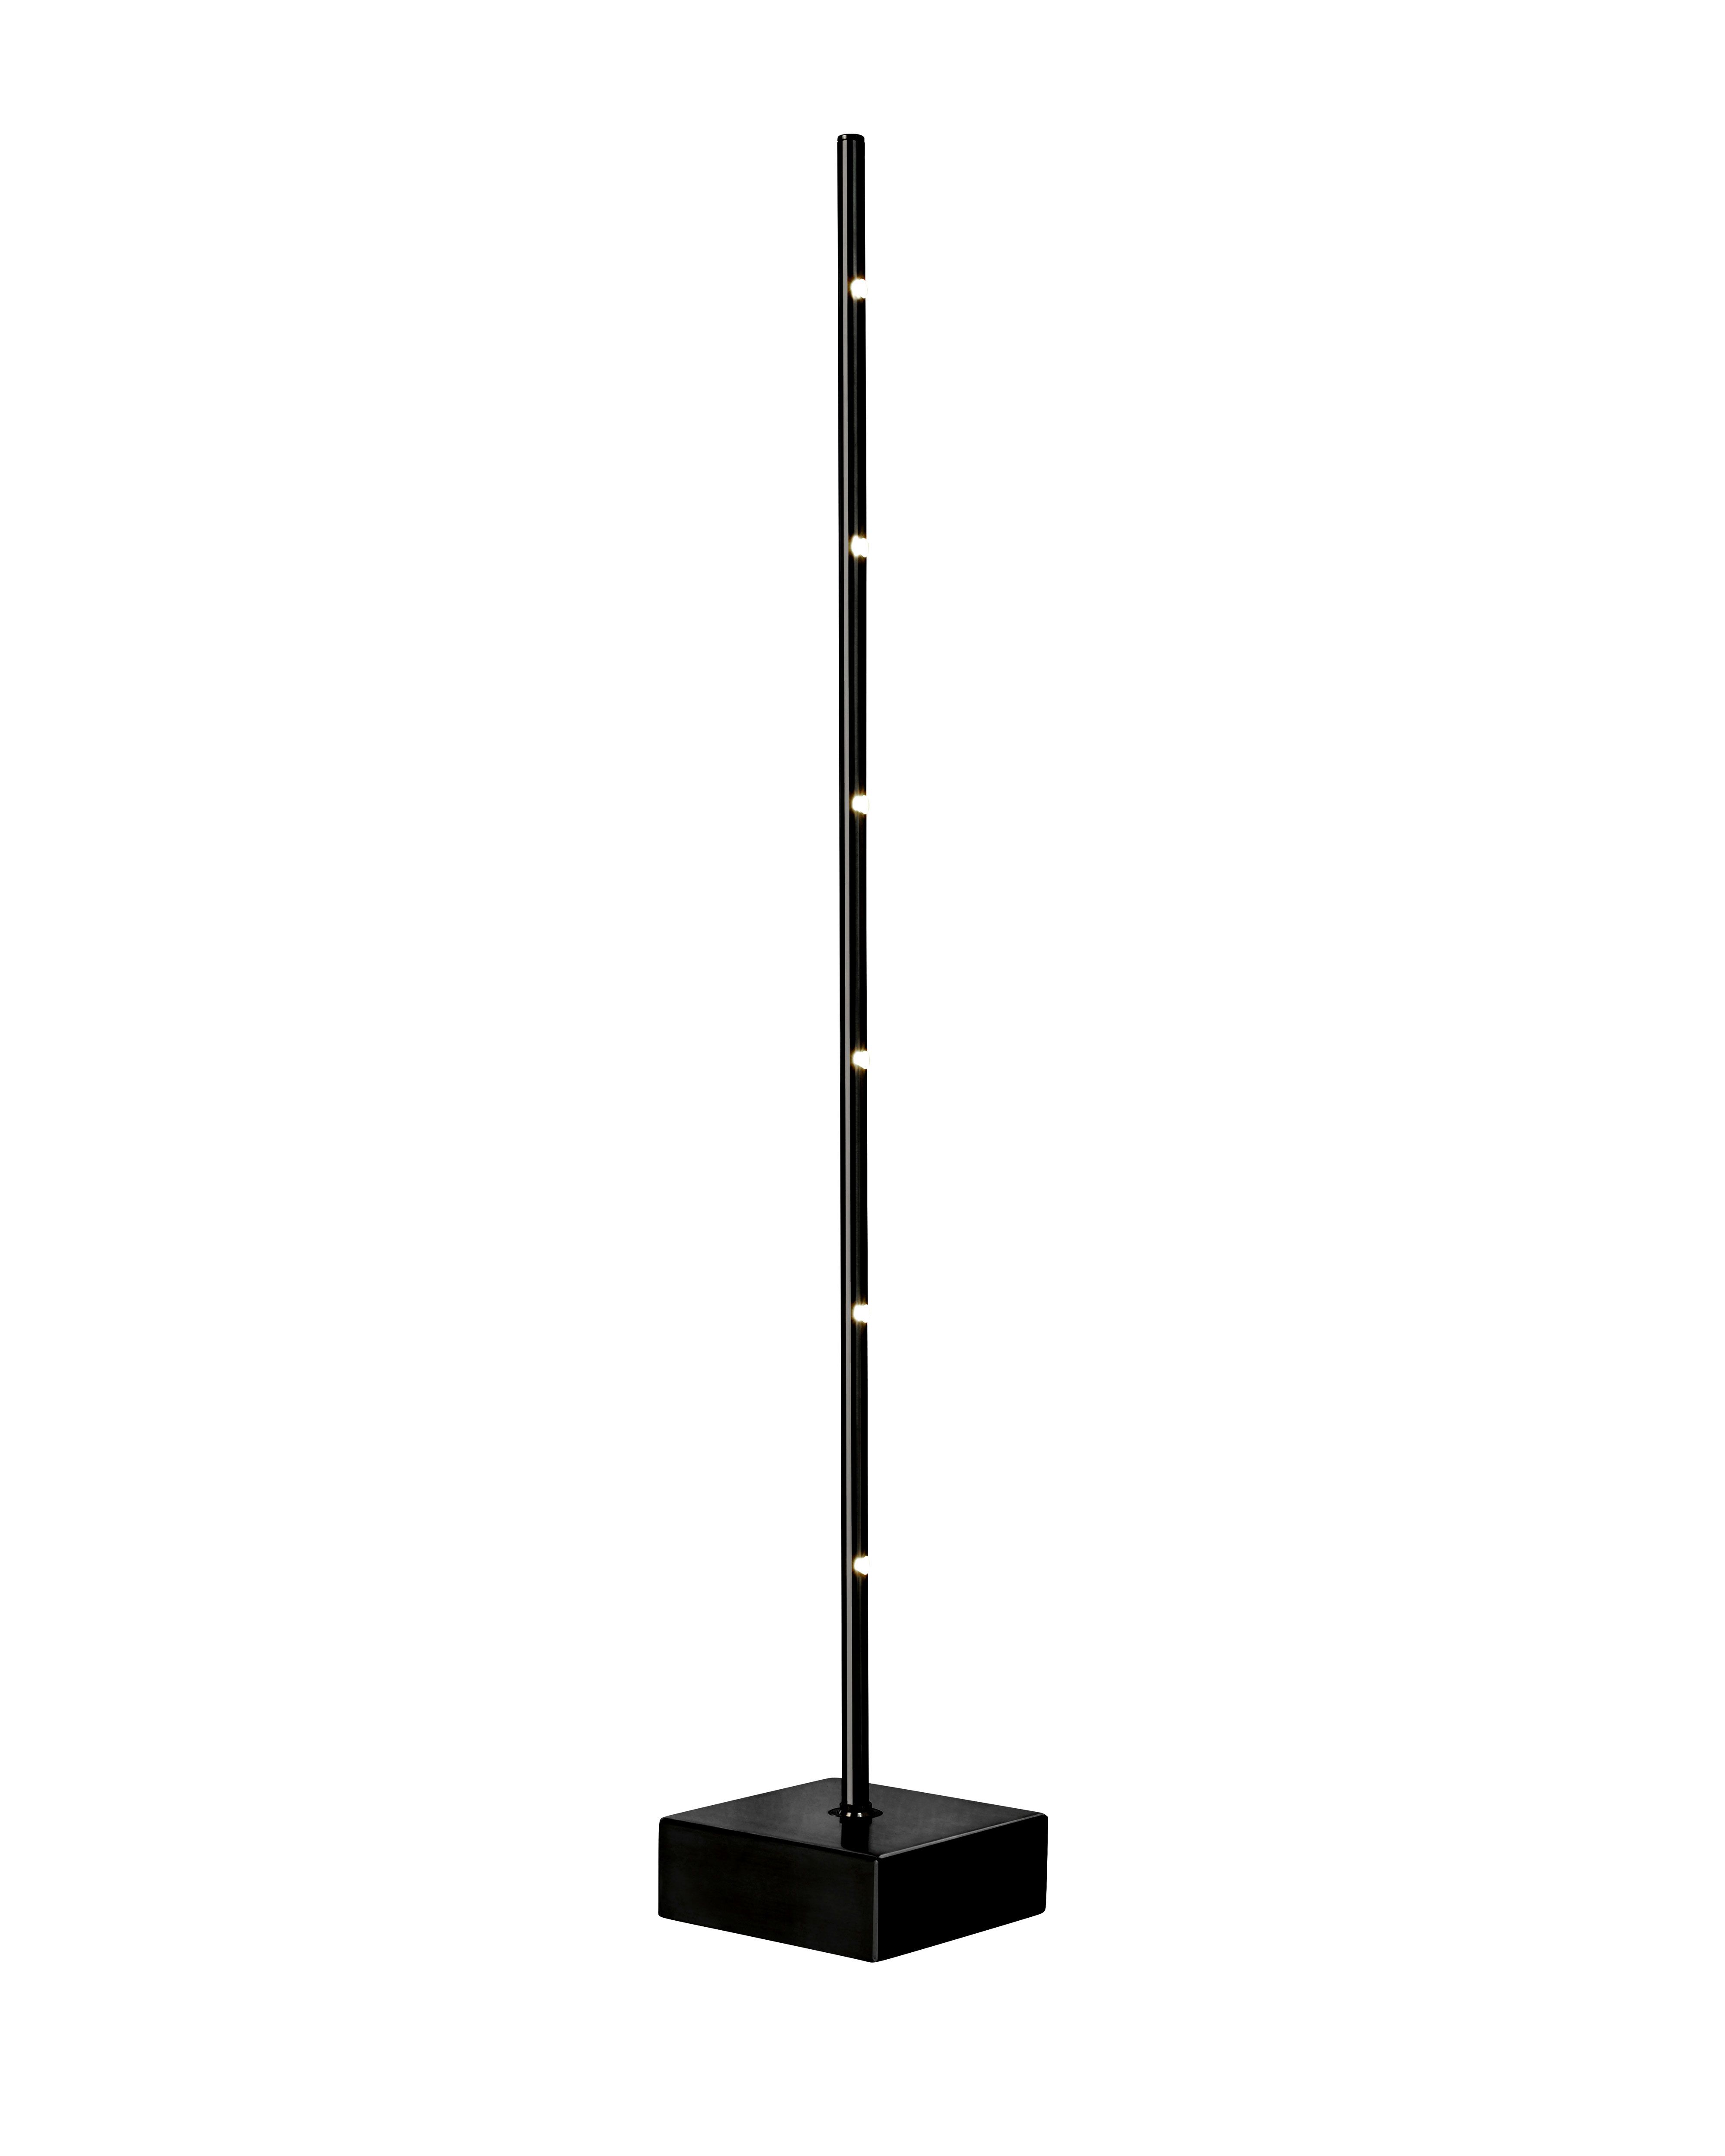 PIN LED binnen tafellamp | Metaal zwart | dimbaar | kantelbaar | 65 cm hoog | made by Sompex